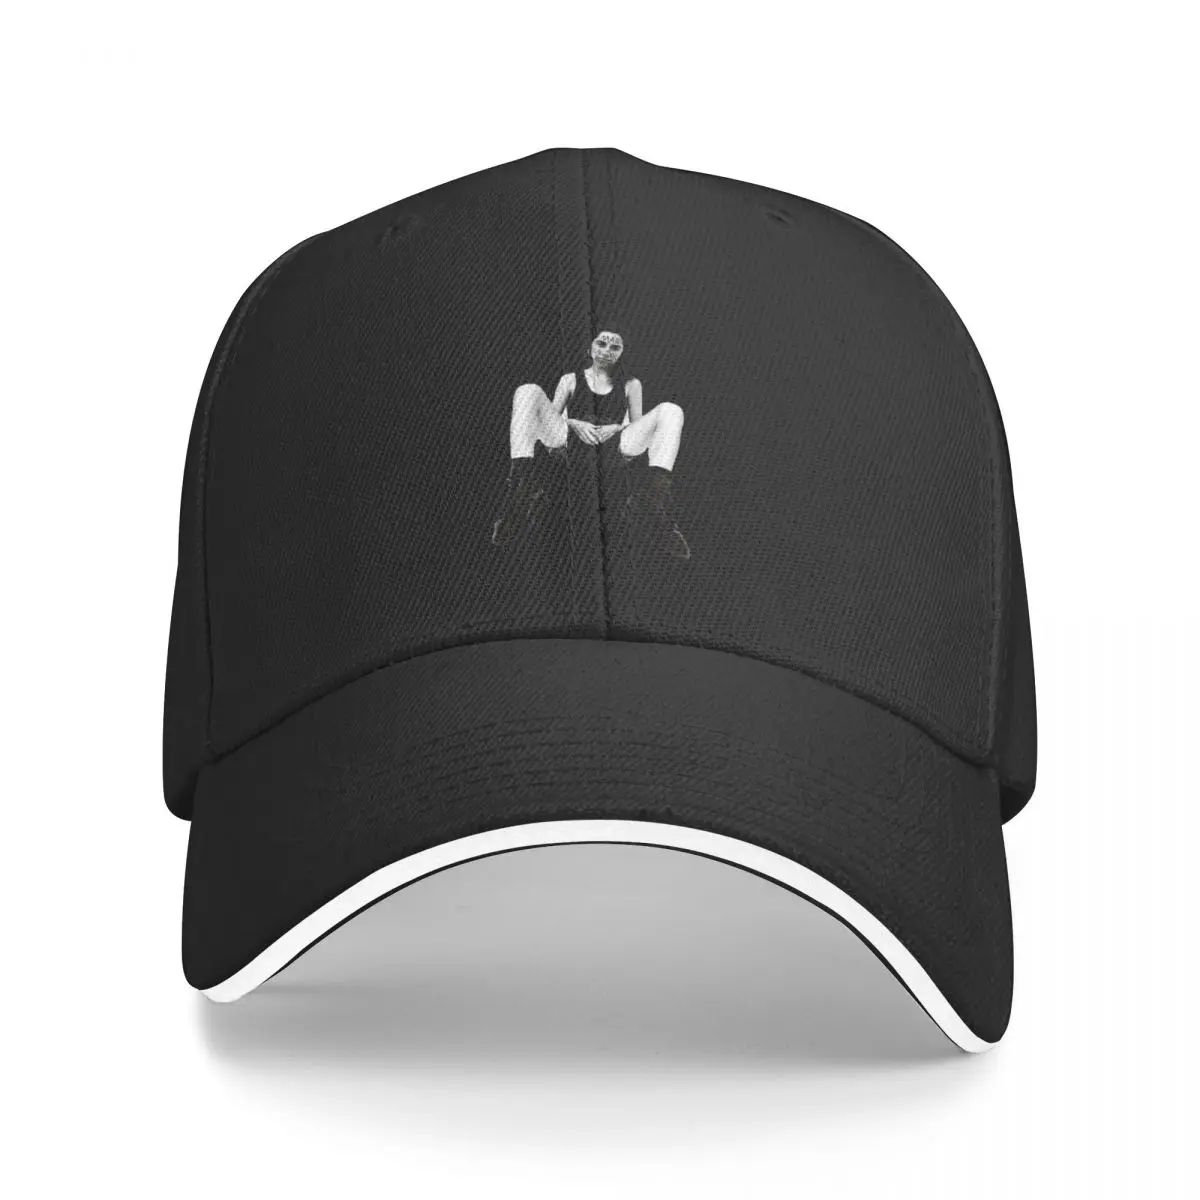 

B-SIDES DEMOS AND RARITIES - PJ HARVEY Baseball Cap Golf Wear Trucker Cap New Hat Hats For Men Women's